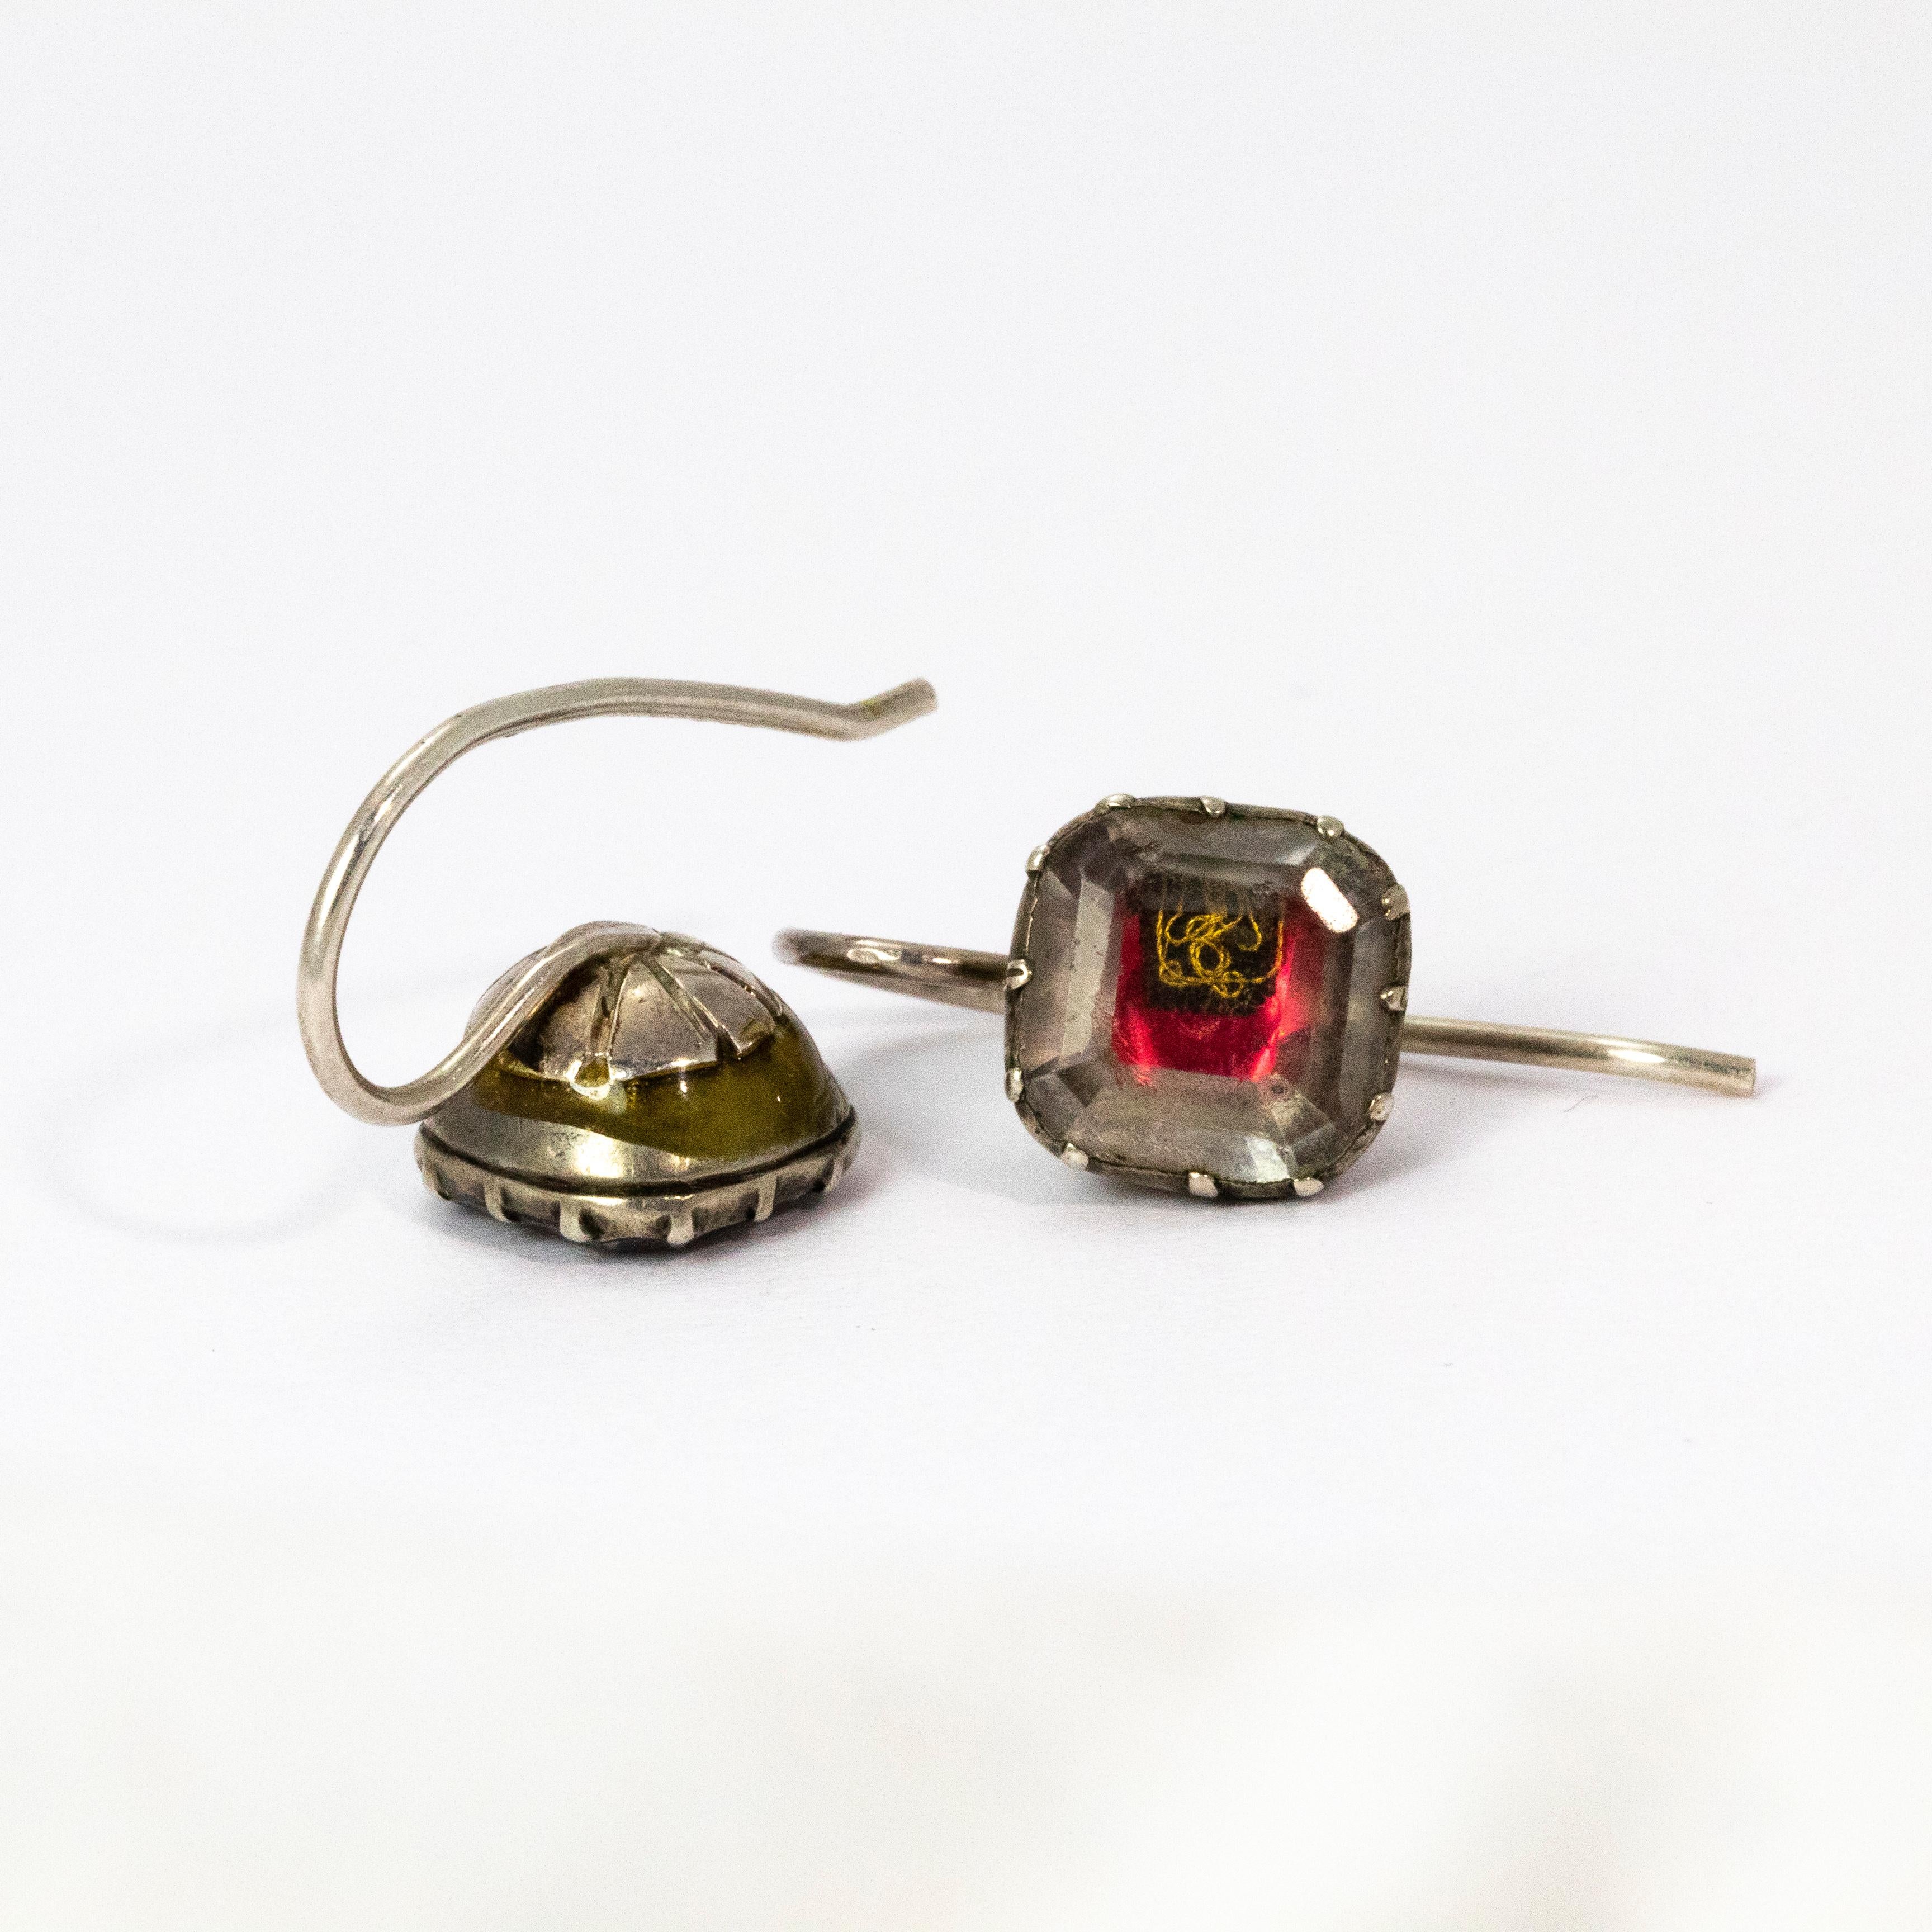 17th century earrings